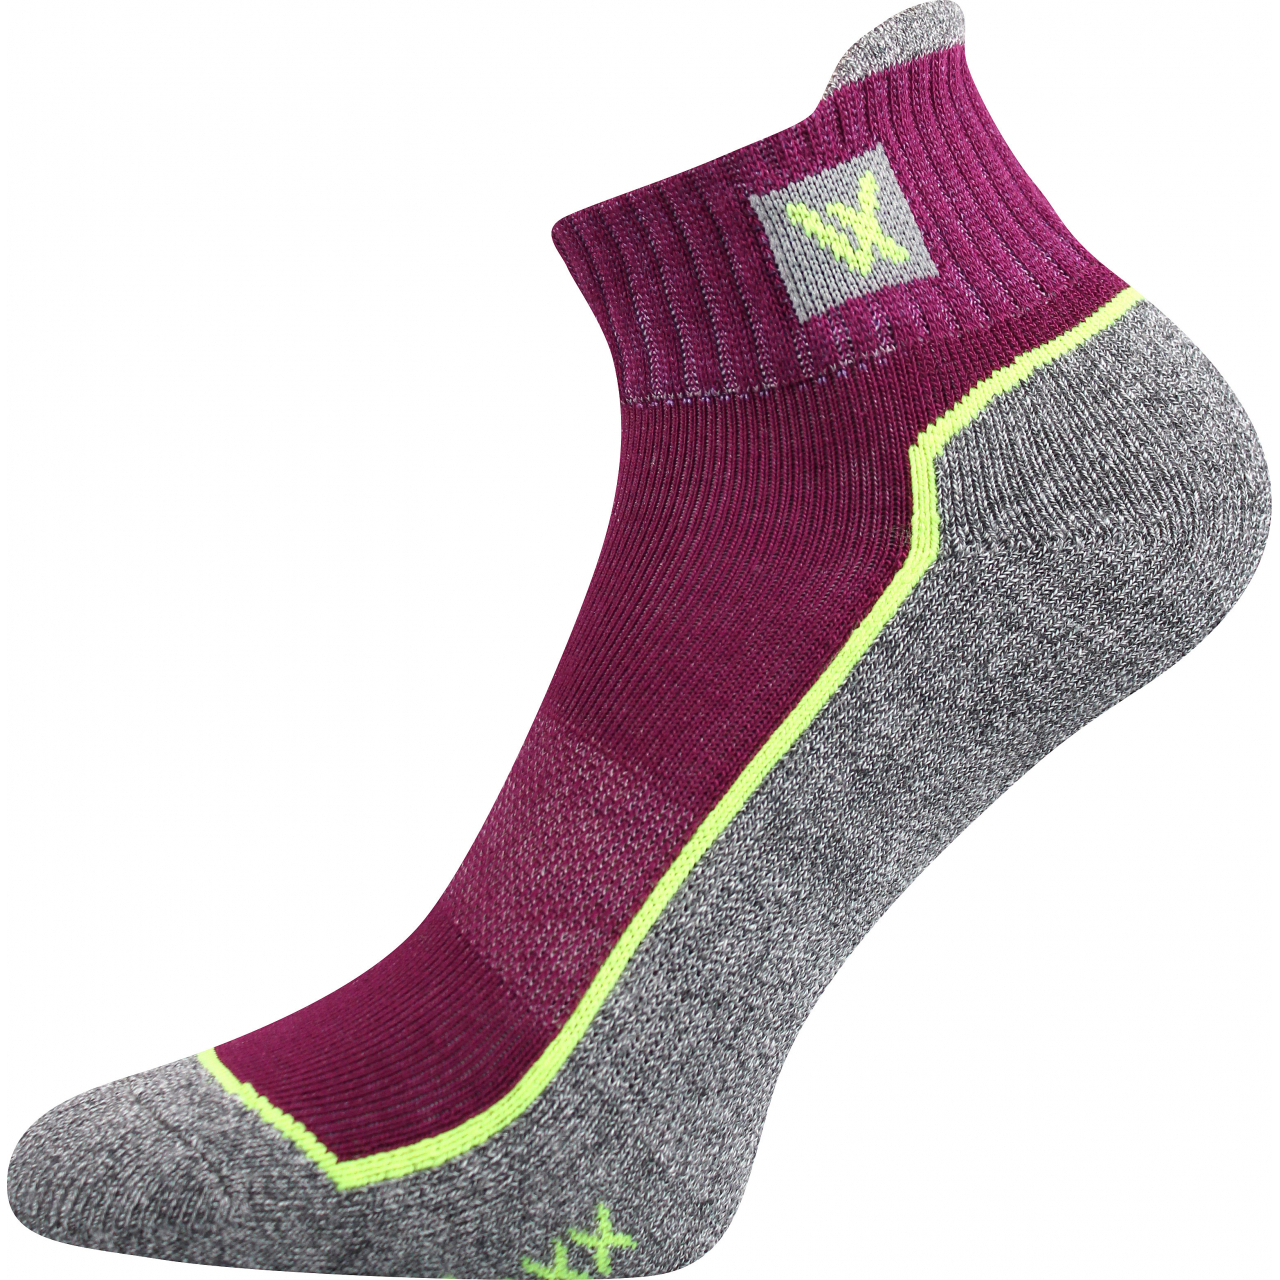 Ponožky unisex sportovní Voxx Nesty 01 - fialové-šedé, 35-38